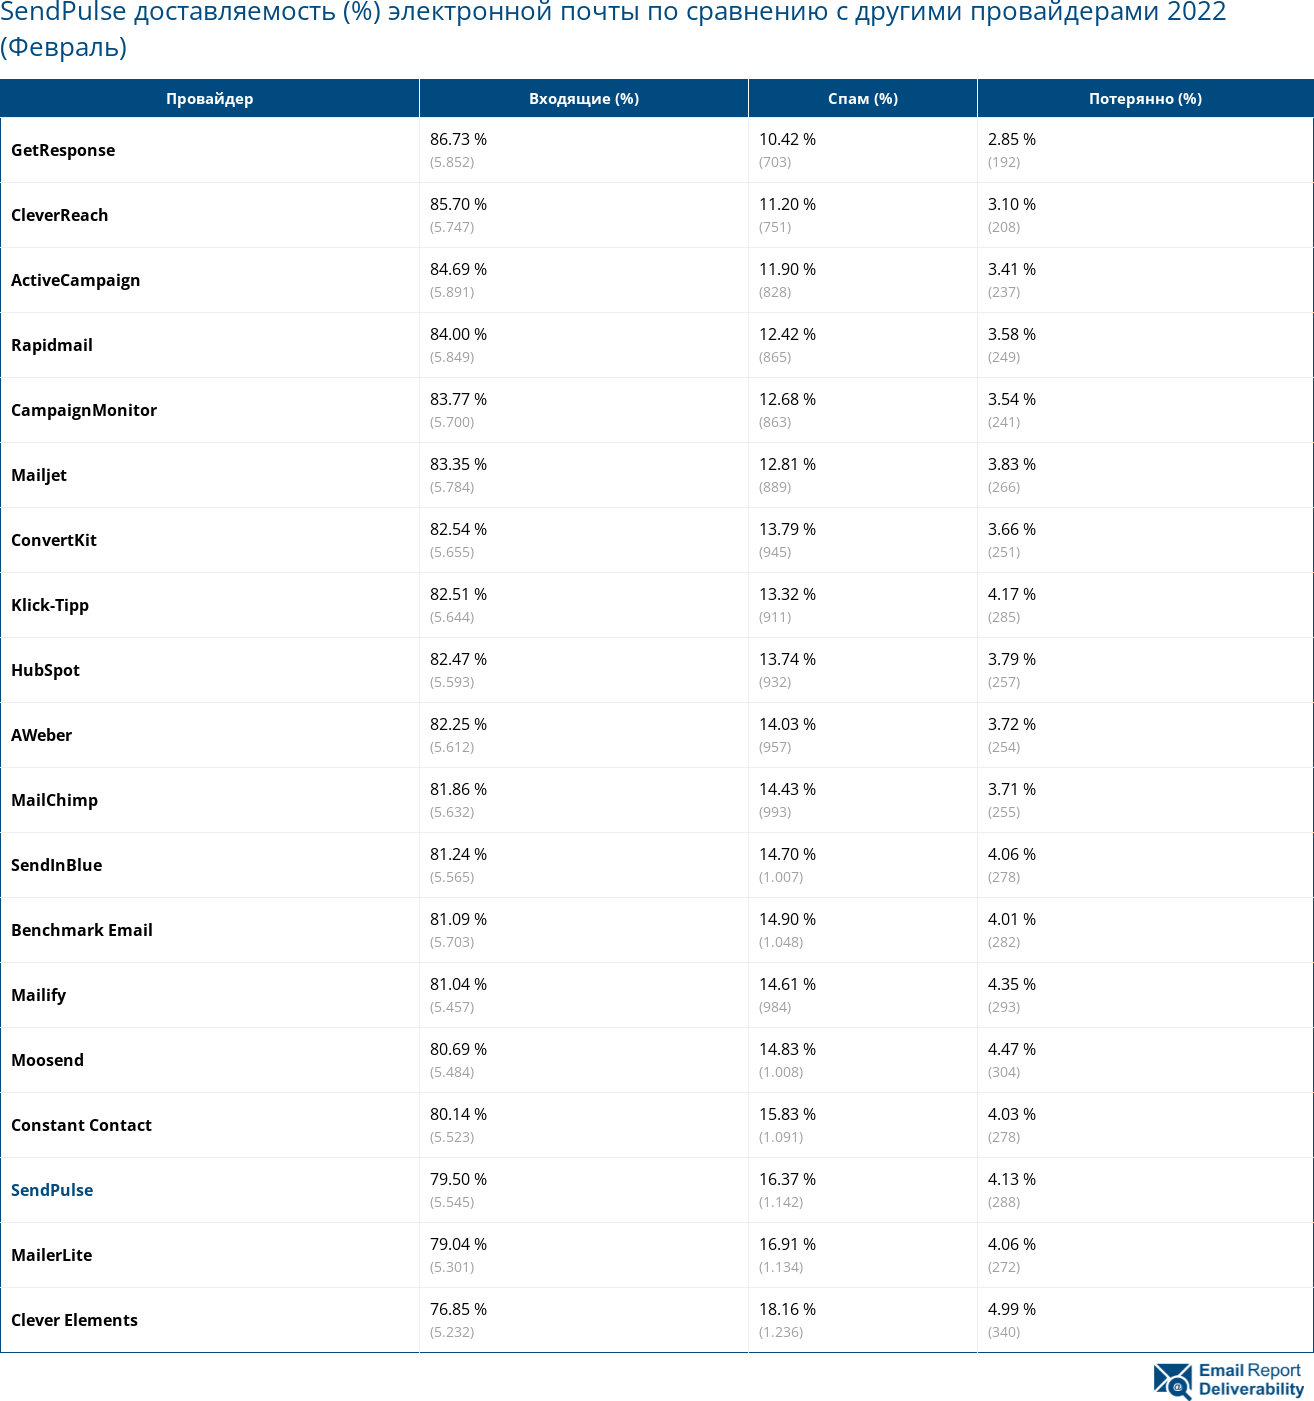 SendPulse доставляемость (%) электронной почты по сравнению с другими провайдерами 2022 (Февраль)